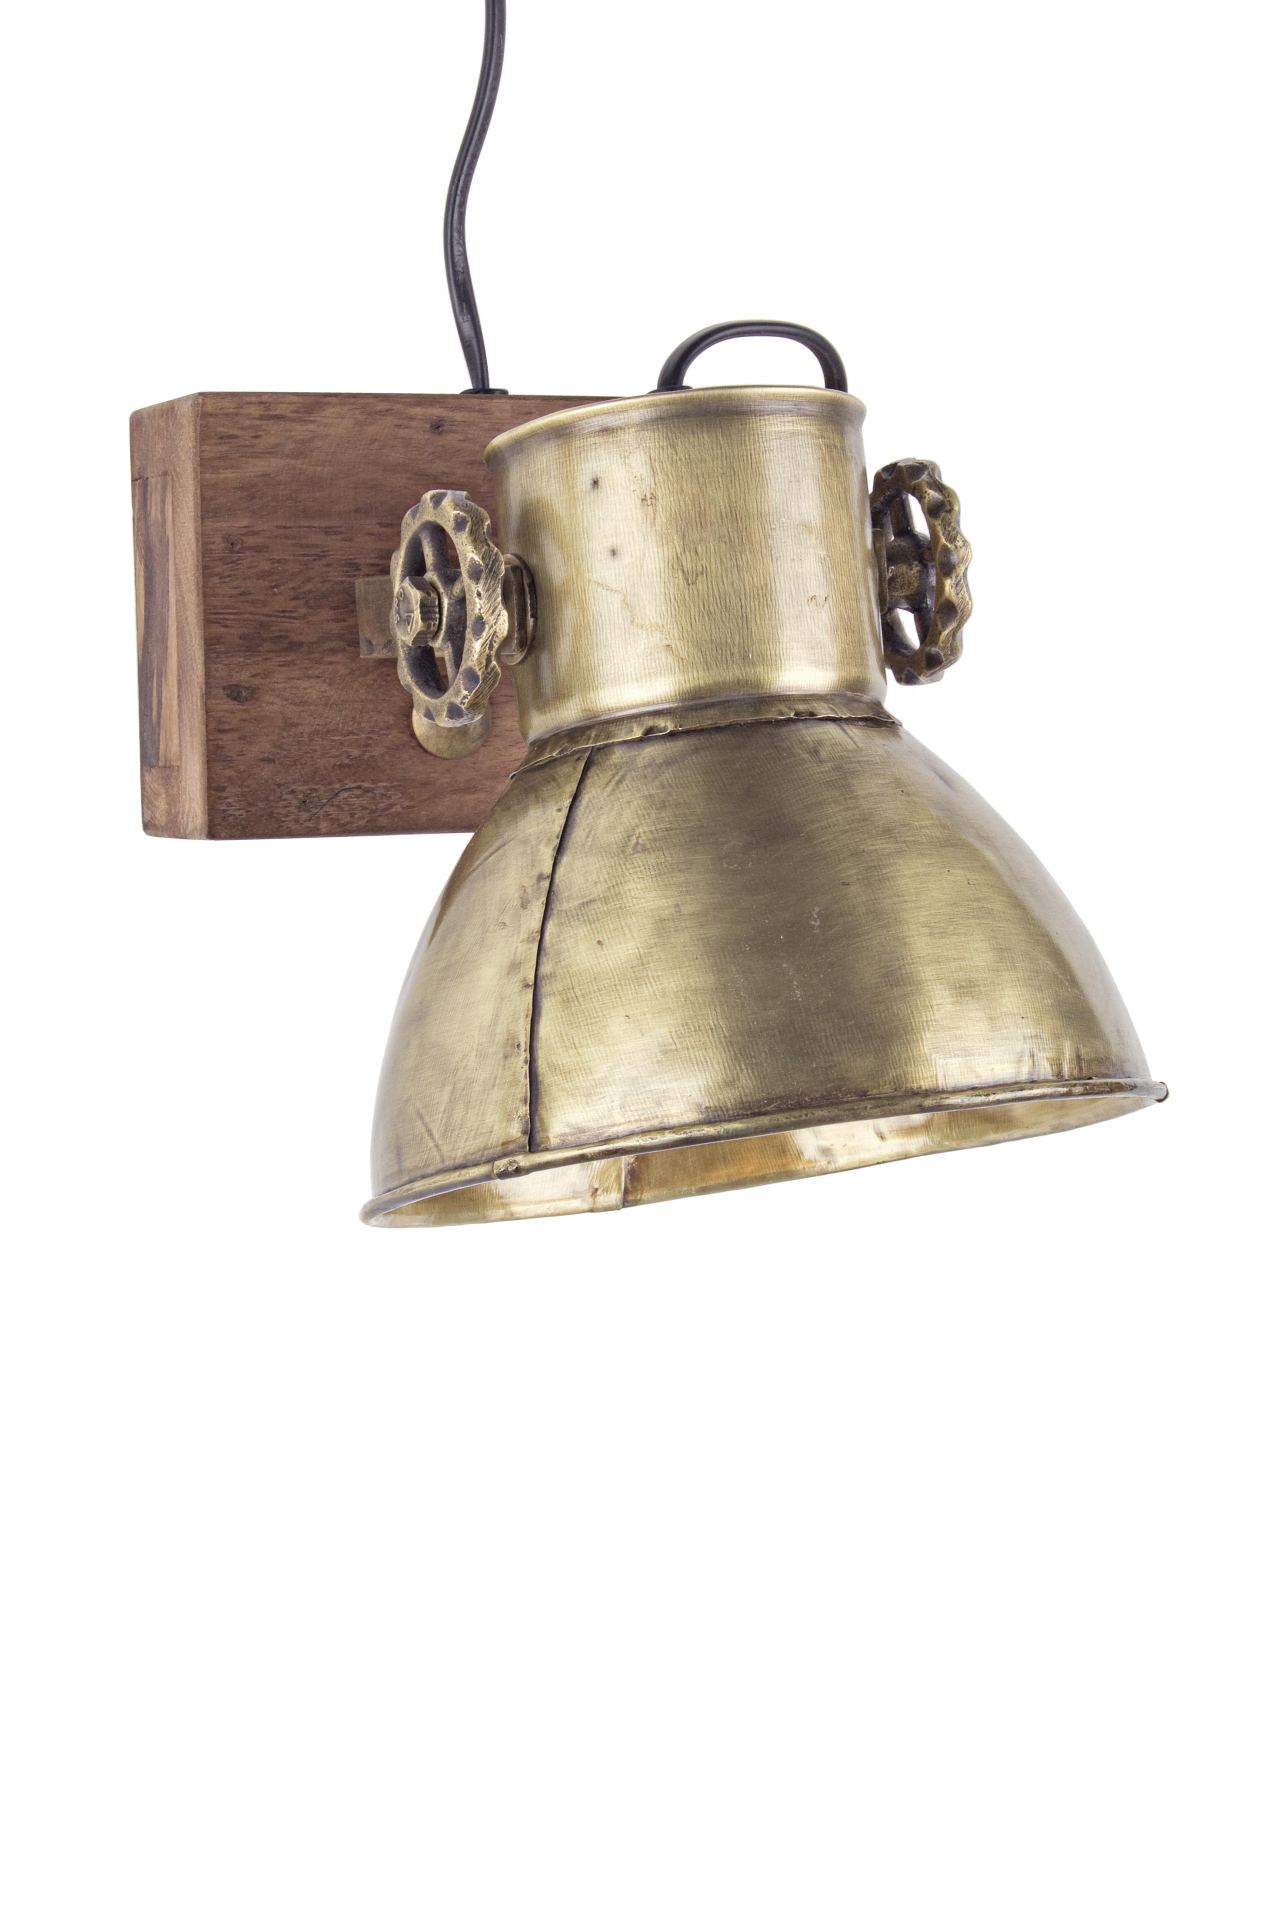 Die Wandleuchte Appllique überzeugt mit ihrem klassischen Design. Gefertigt wurde sie aus Mangoholz, welches einen natürlichen Farbton besitzt. Der Lampenschirm ist aus Metall und hat eine goldene Farbe. Die Lampe besitzt eine Höhe von 27 cm.